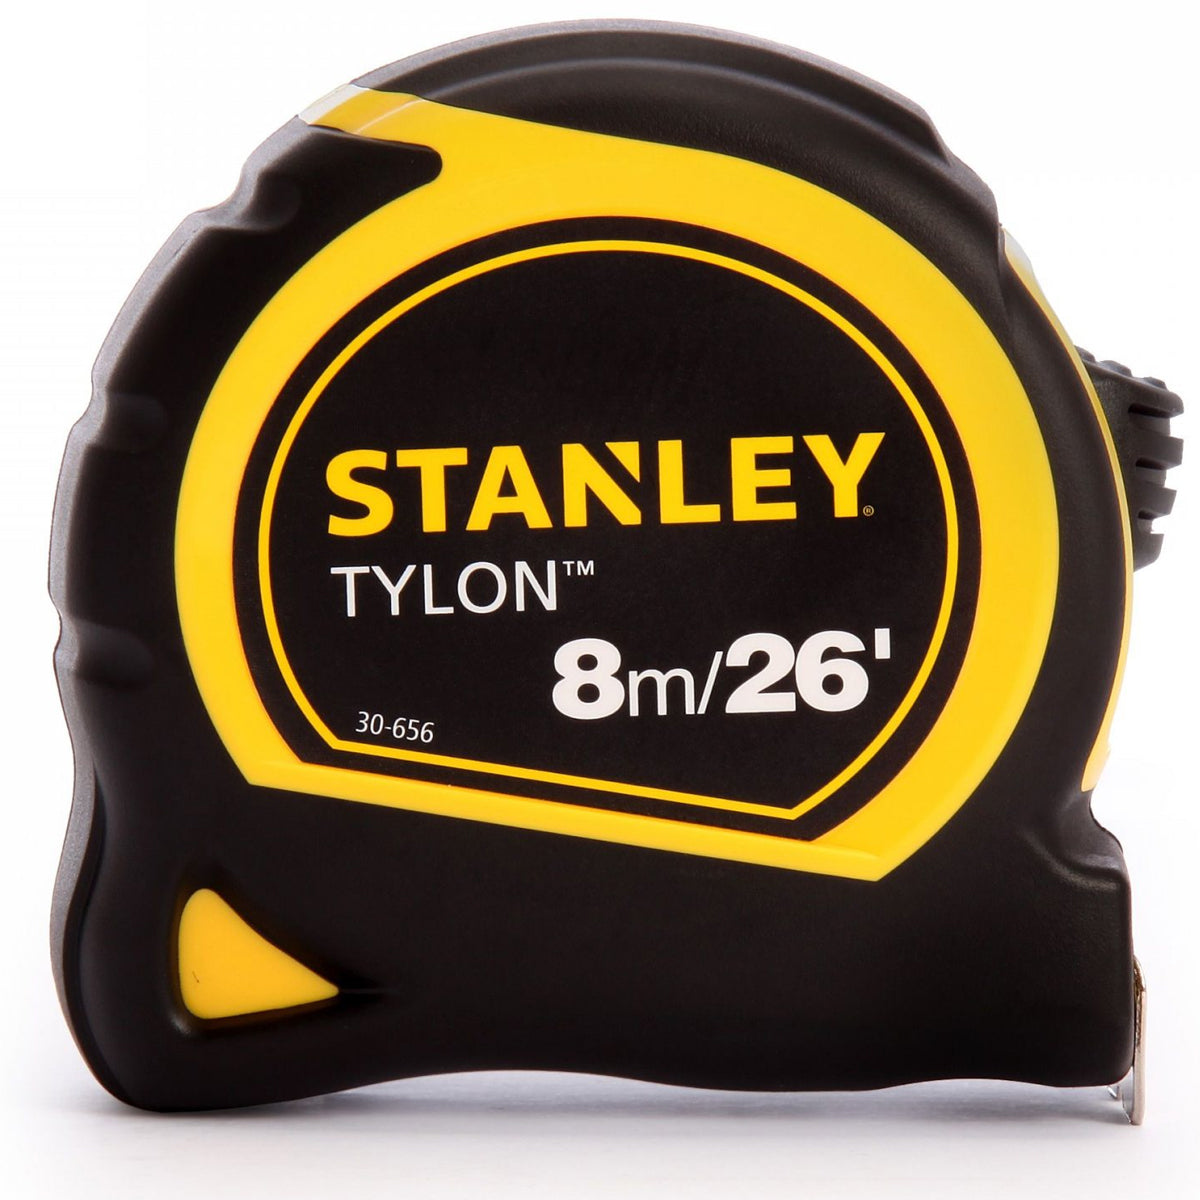 Stanley STA130656N Tylon Pocket Tape Measure 8m/26ft 1-30-656